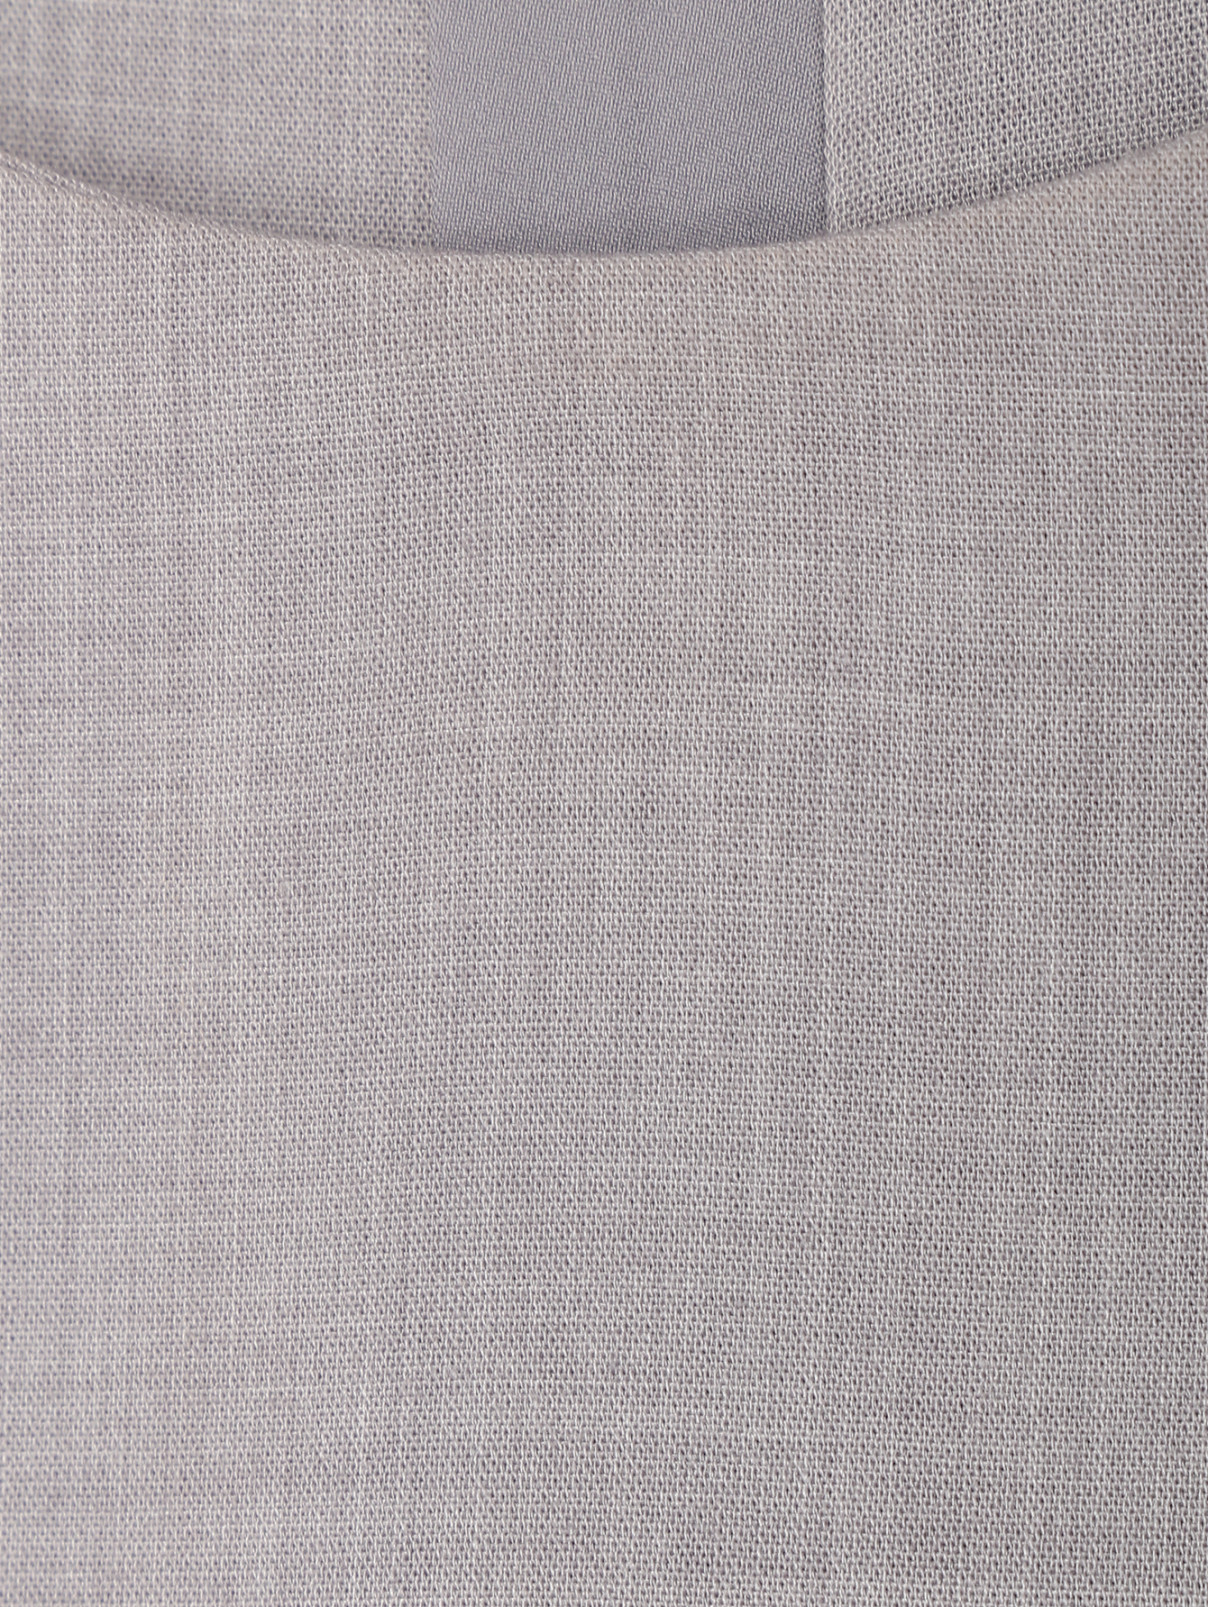 Платье с контрастной отделкой и поясом Tommy Hilfiger  –  Деталь  – Цвет:  Серый